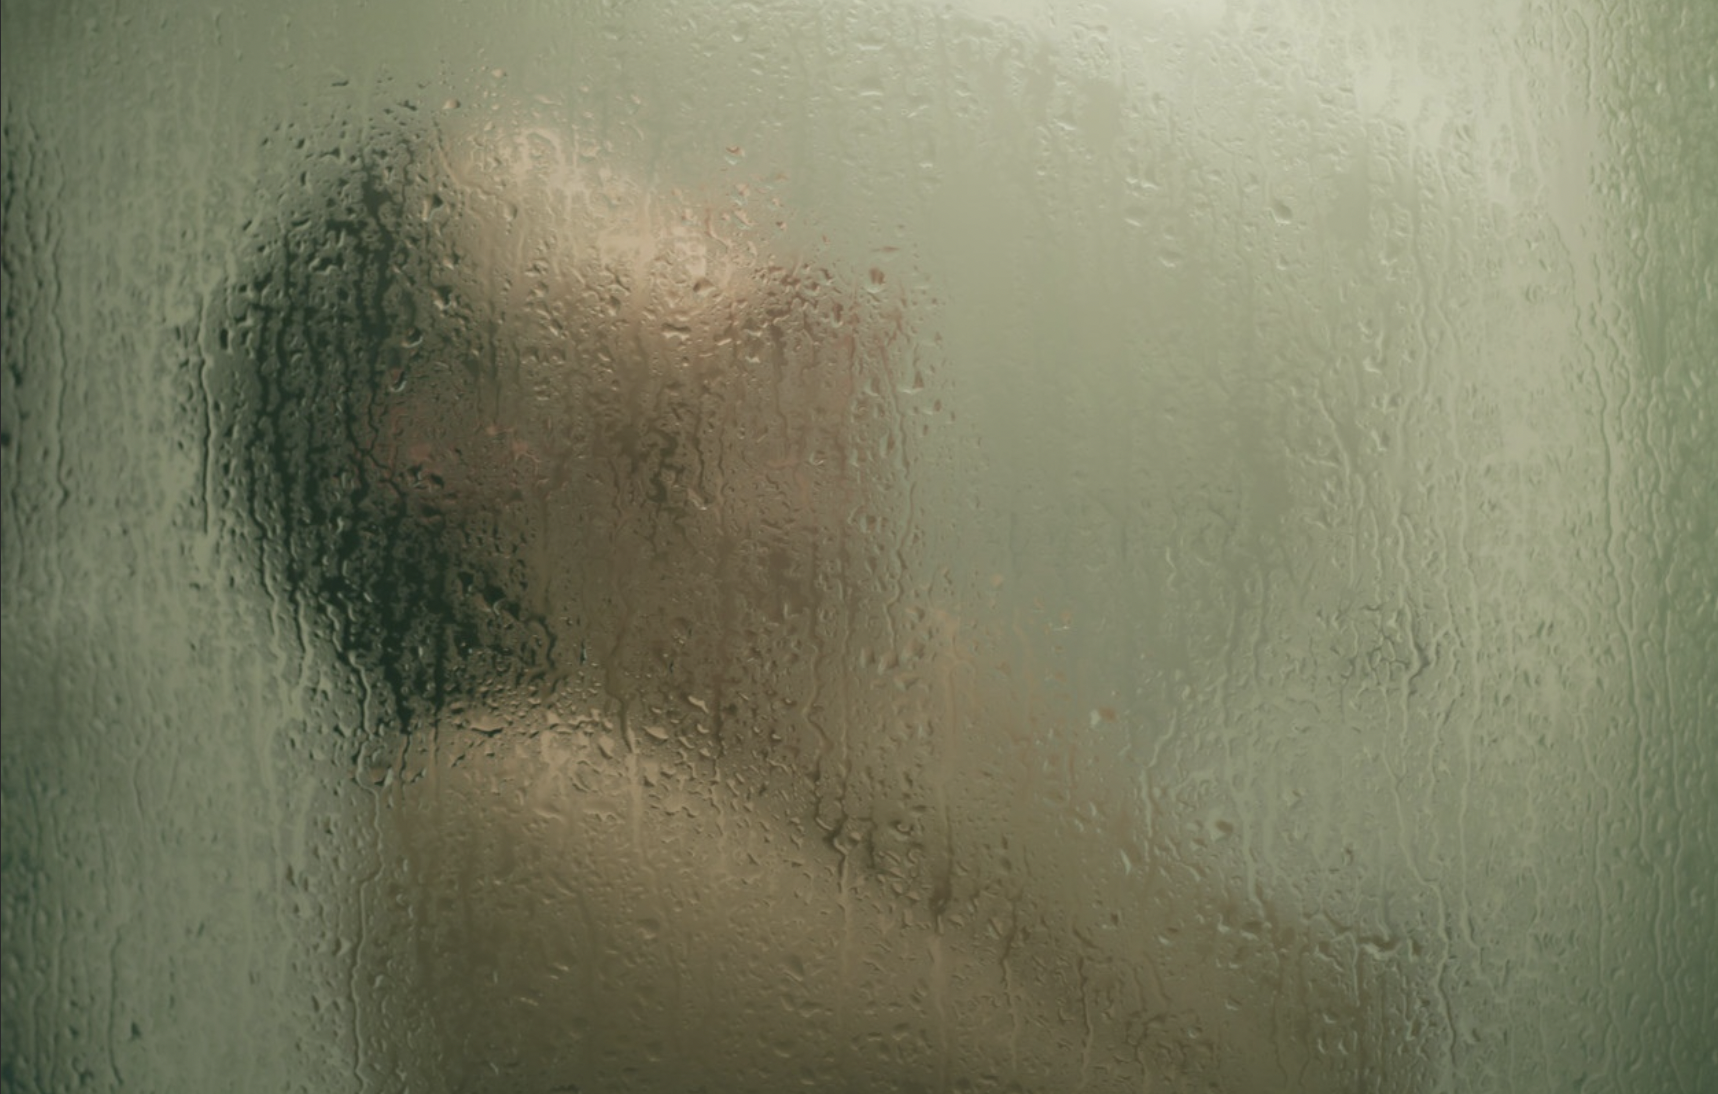 Persona en la ducha | Fuente: Flickr